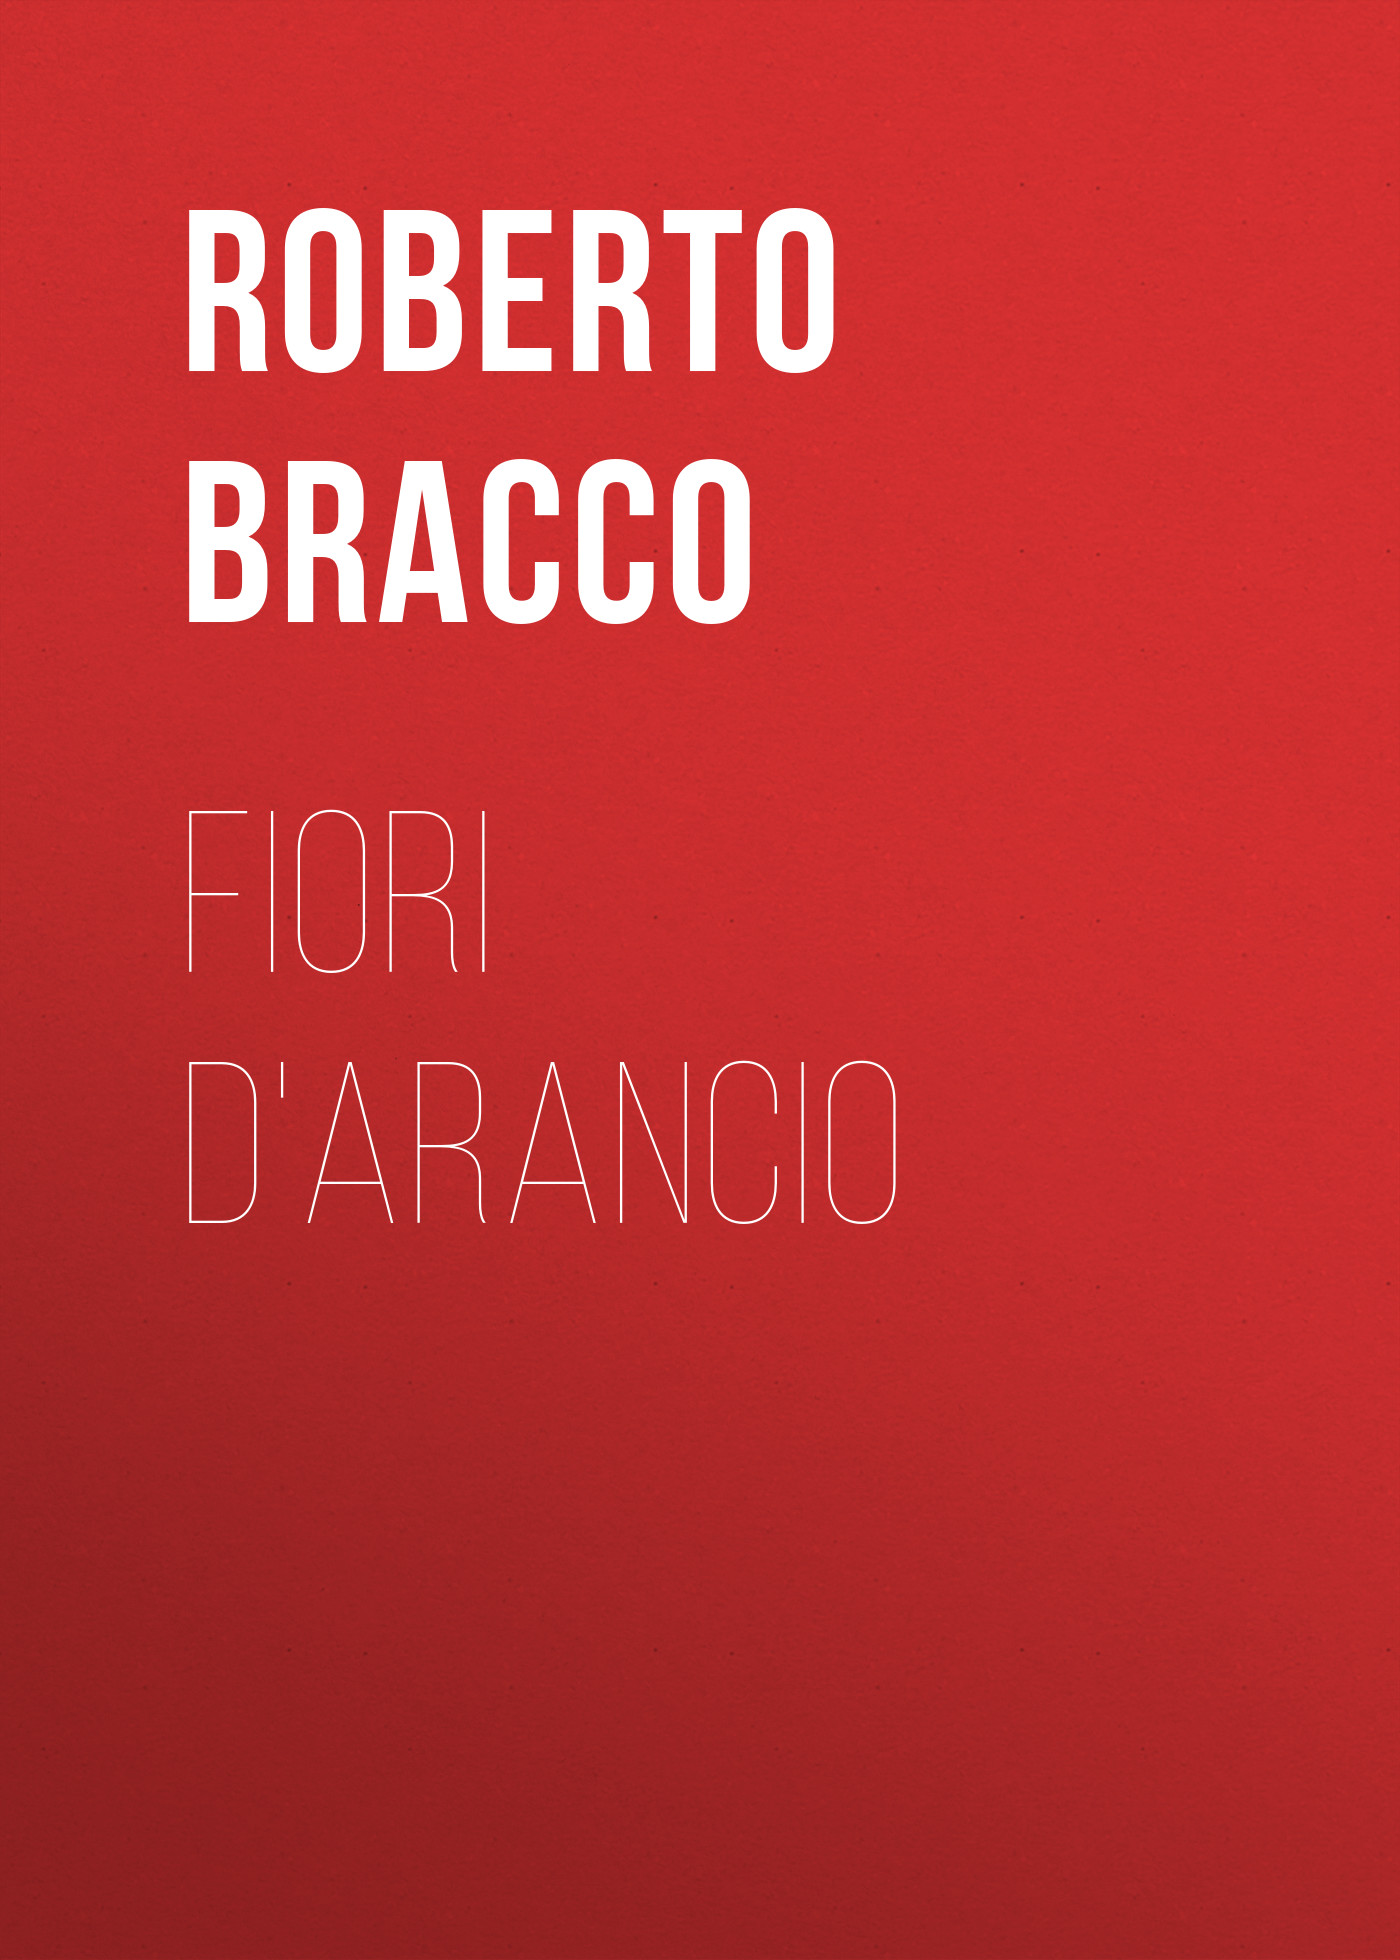 Книга Fiori d'arancio из серии , созданная Roberto Bracco, может относится к жанру Зарубежная старинная литература, Зарубежная классика, Зарубежная драматургия. Стоимость электронной книги Fiori d'arancio с идентификатором 24179700 составляет 0.90 руб.